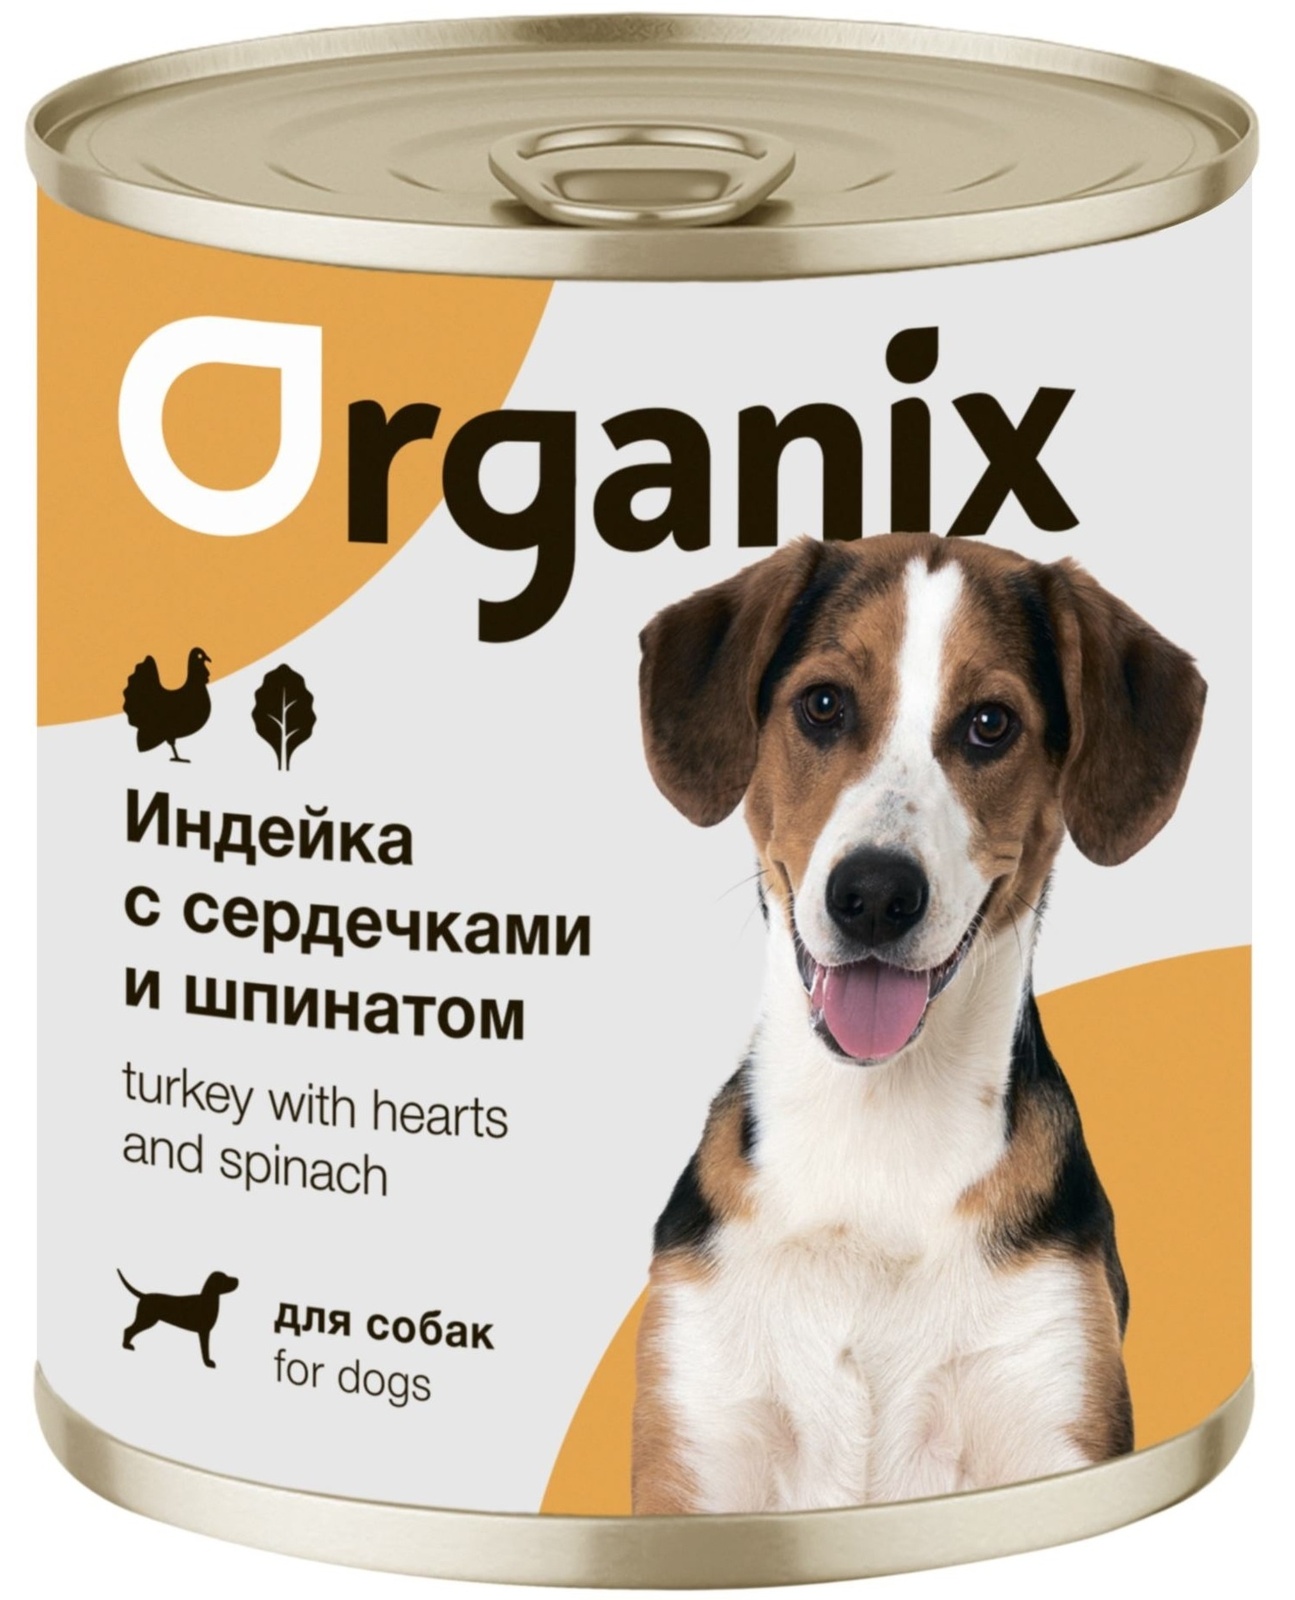 Organix консервы Organix консервы для собак Индейка с сердечками и шпинатом (750 г) organix консервы organix консервы с говядиной и рубцом для собак 750 г